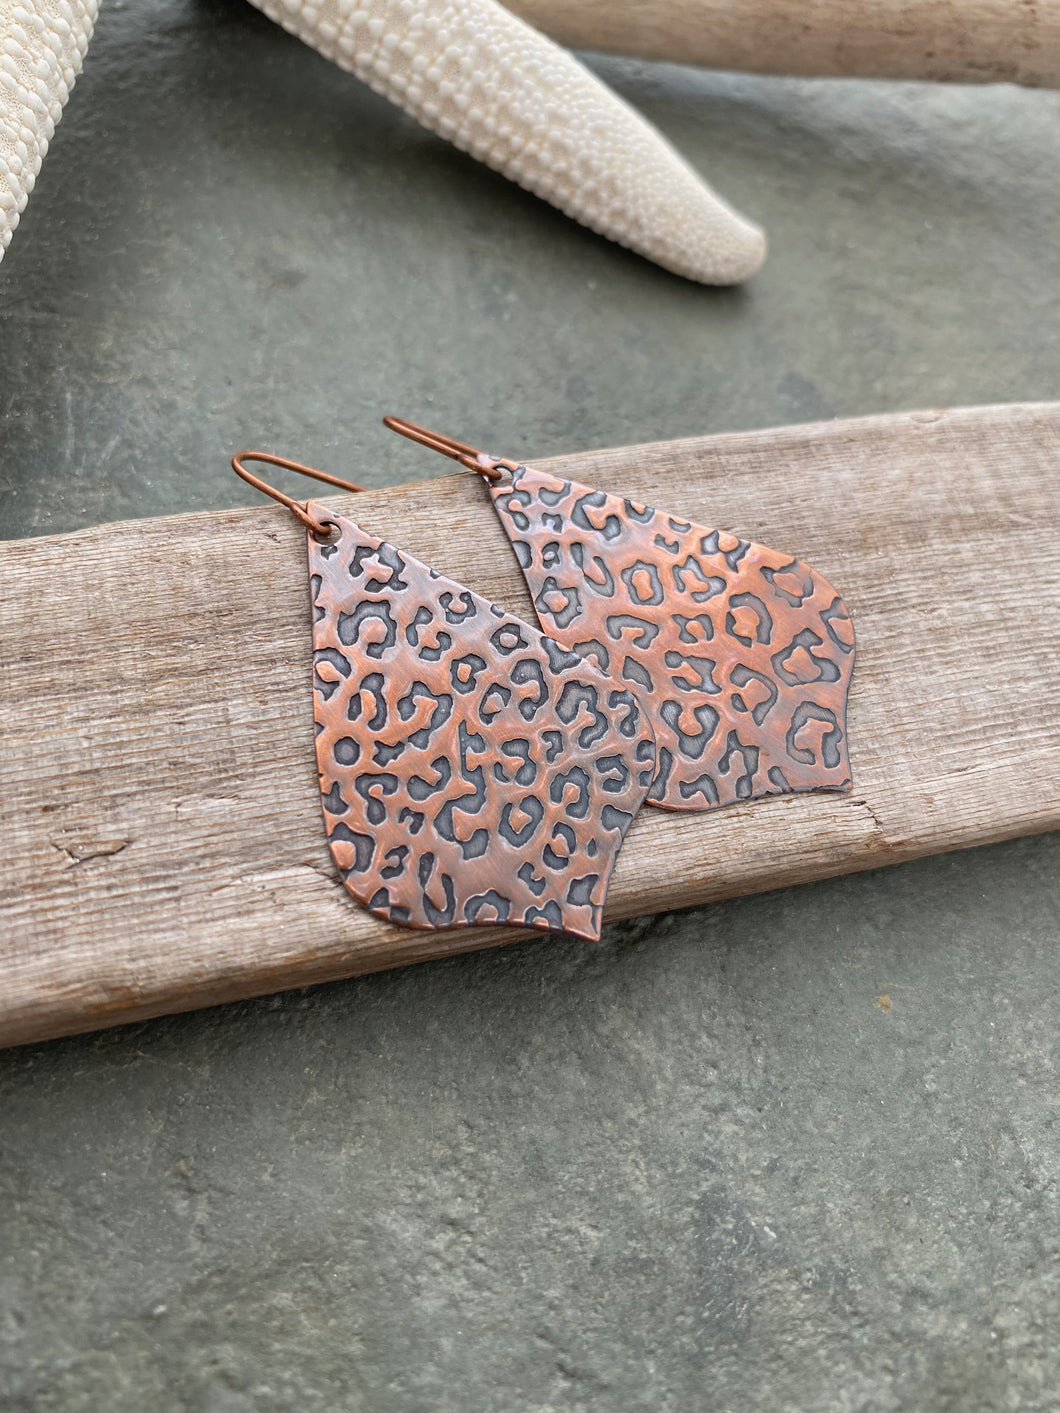 Copper rustic leopard print earrings - Wild Animal Earrings - Dangle Earrings - Large statement earrings